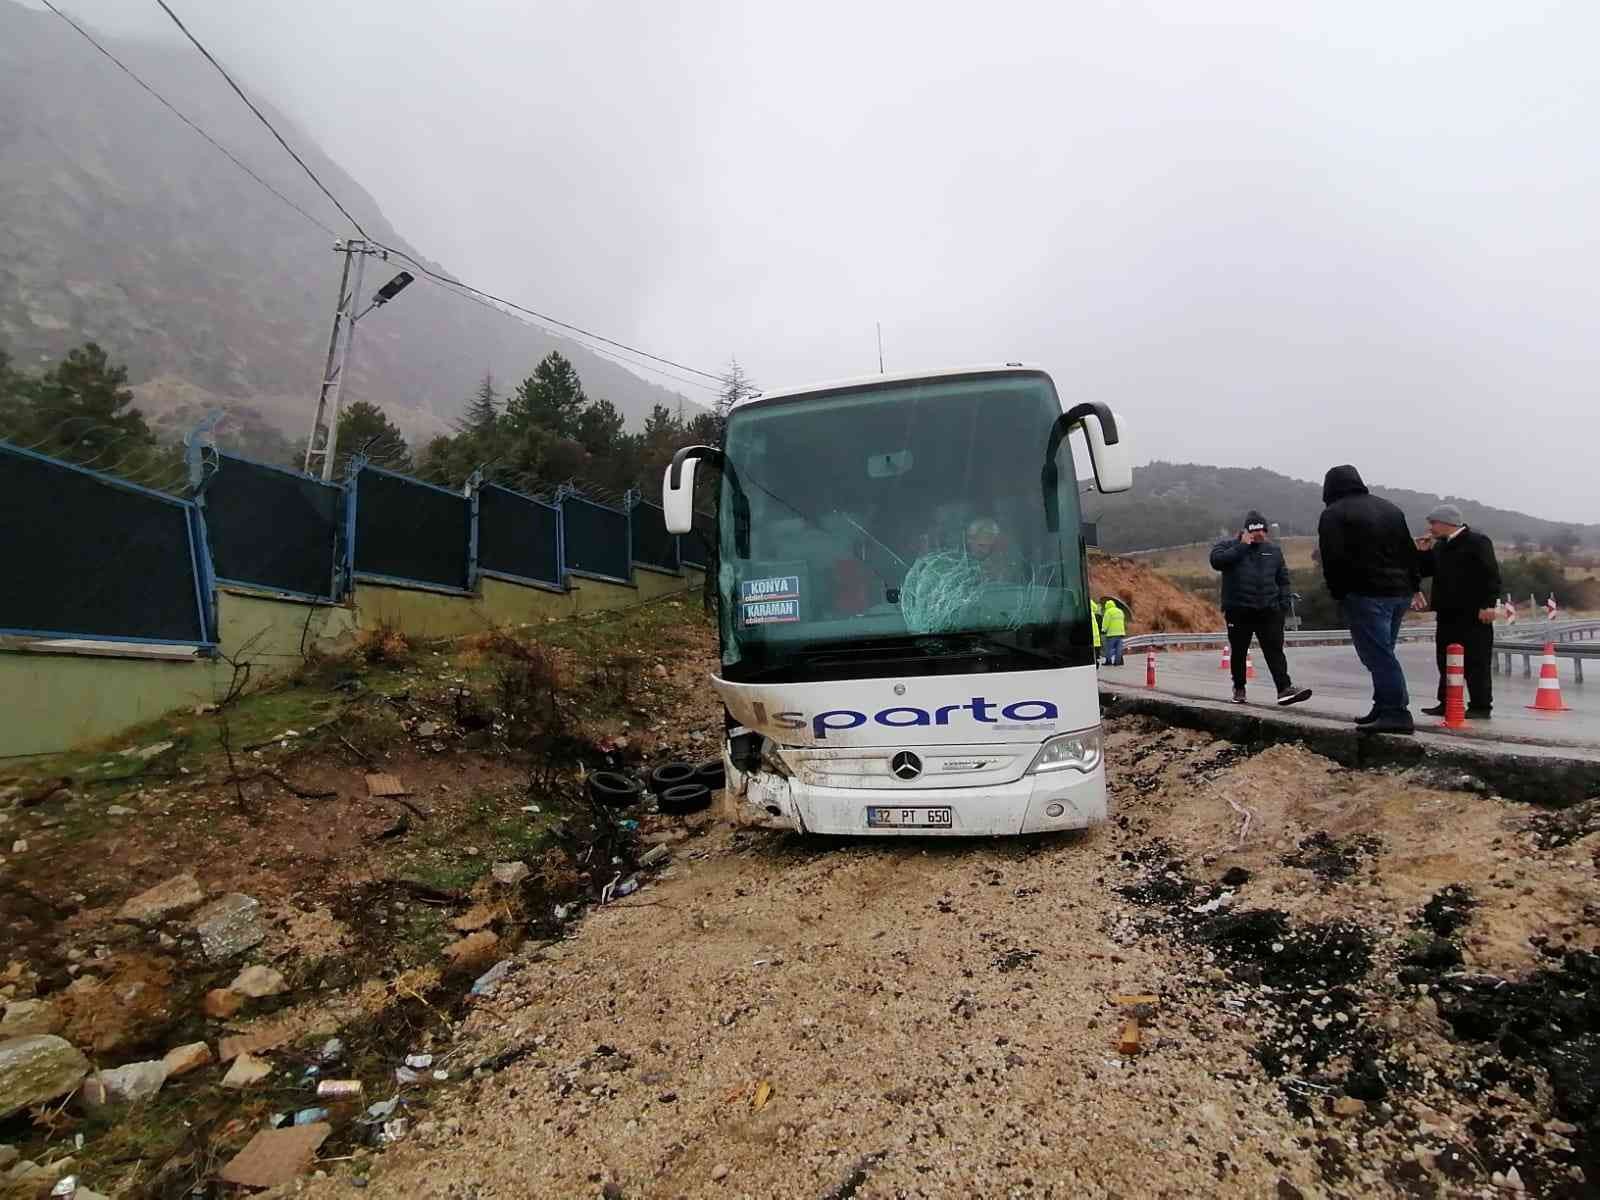 Otobüs yoldan çıktı kaza ucuz atlatıldı #isparta